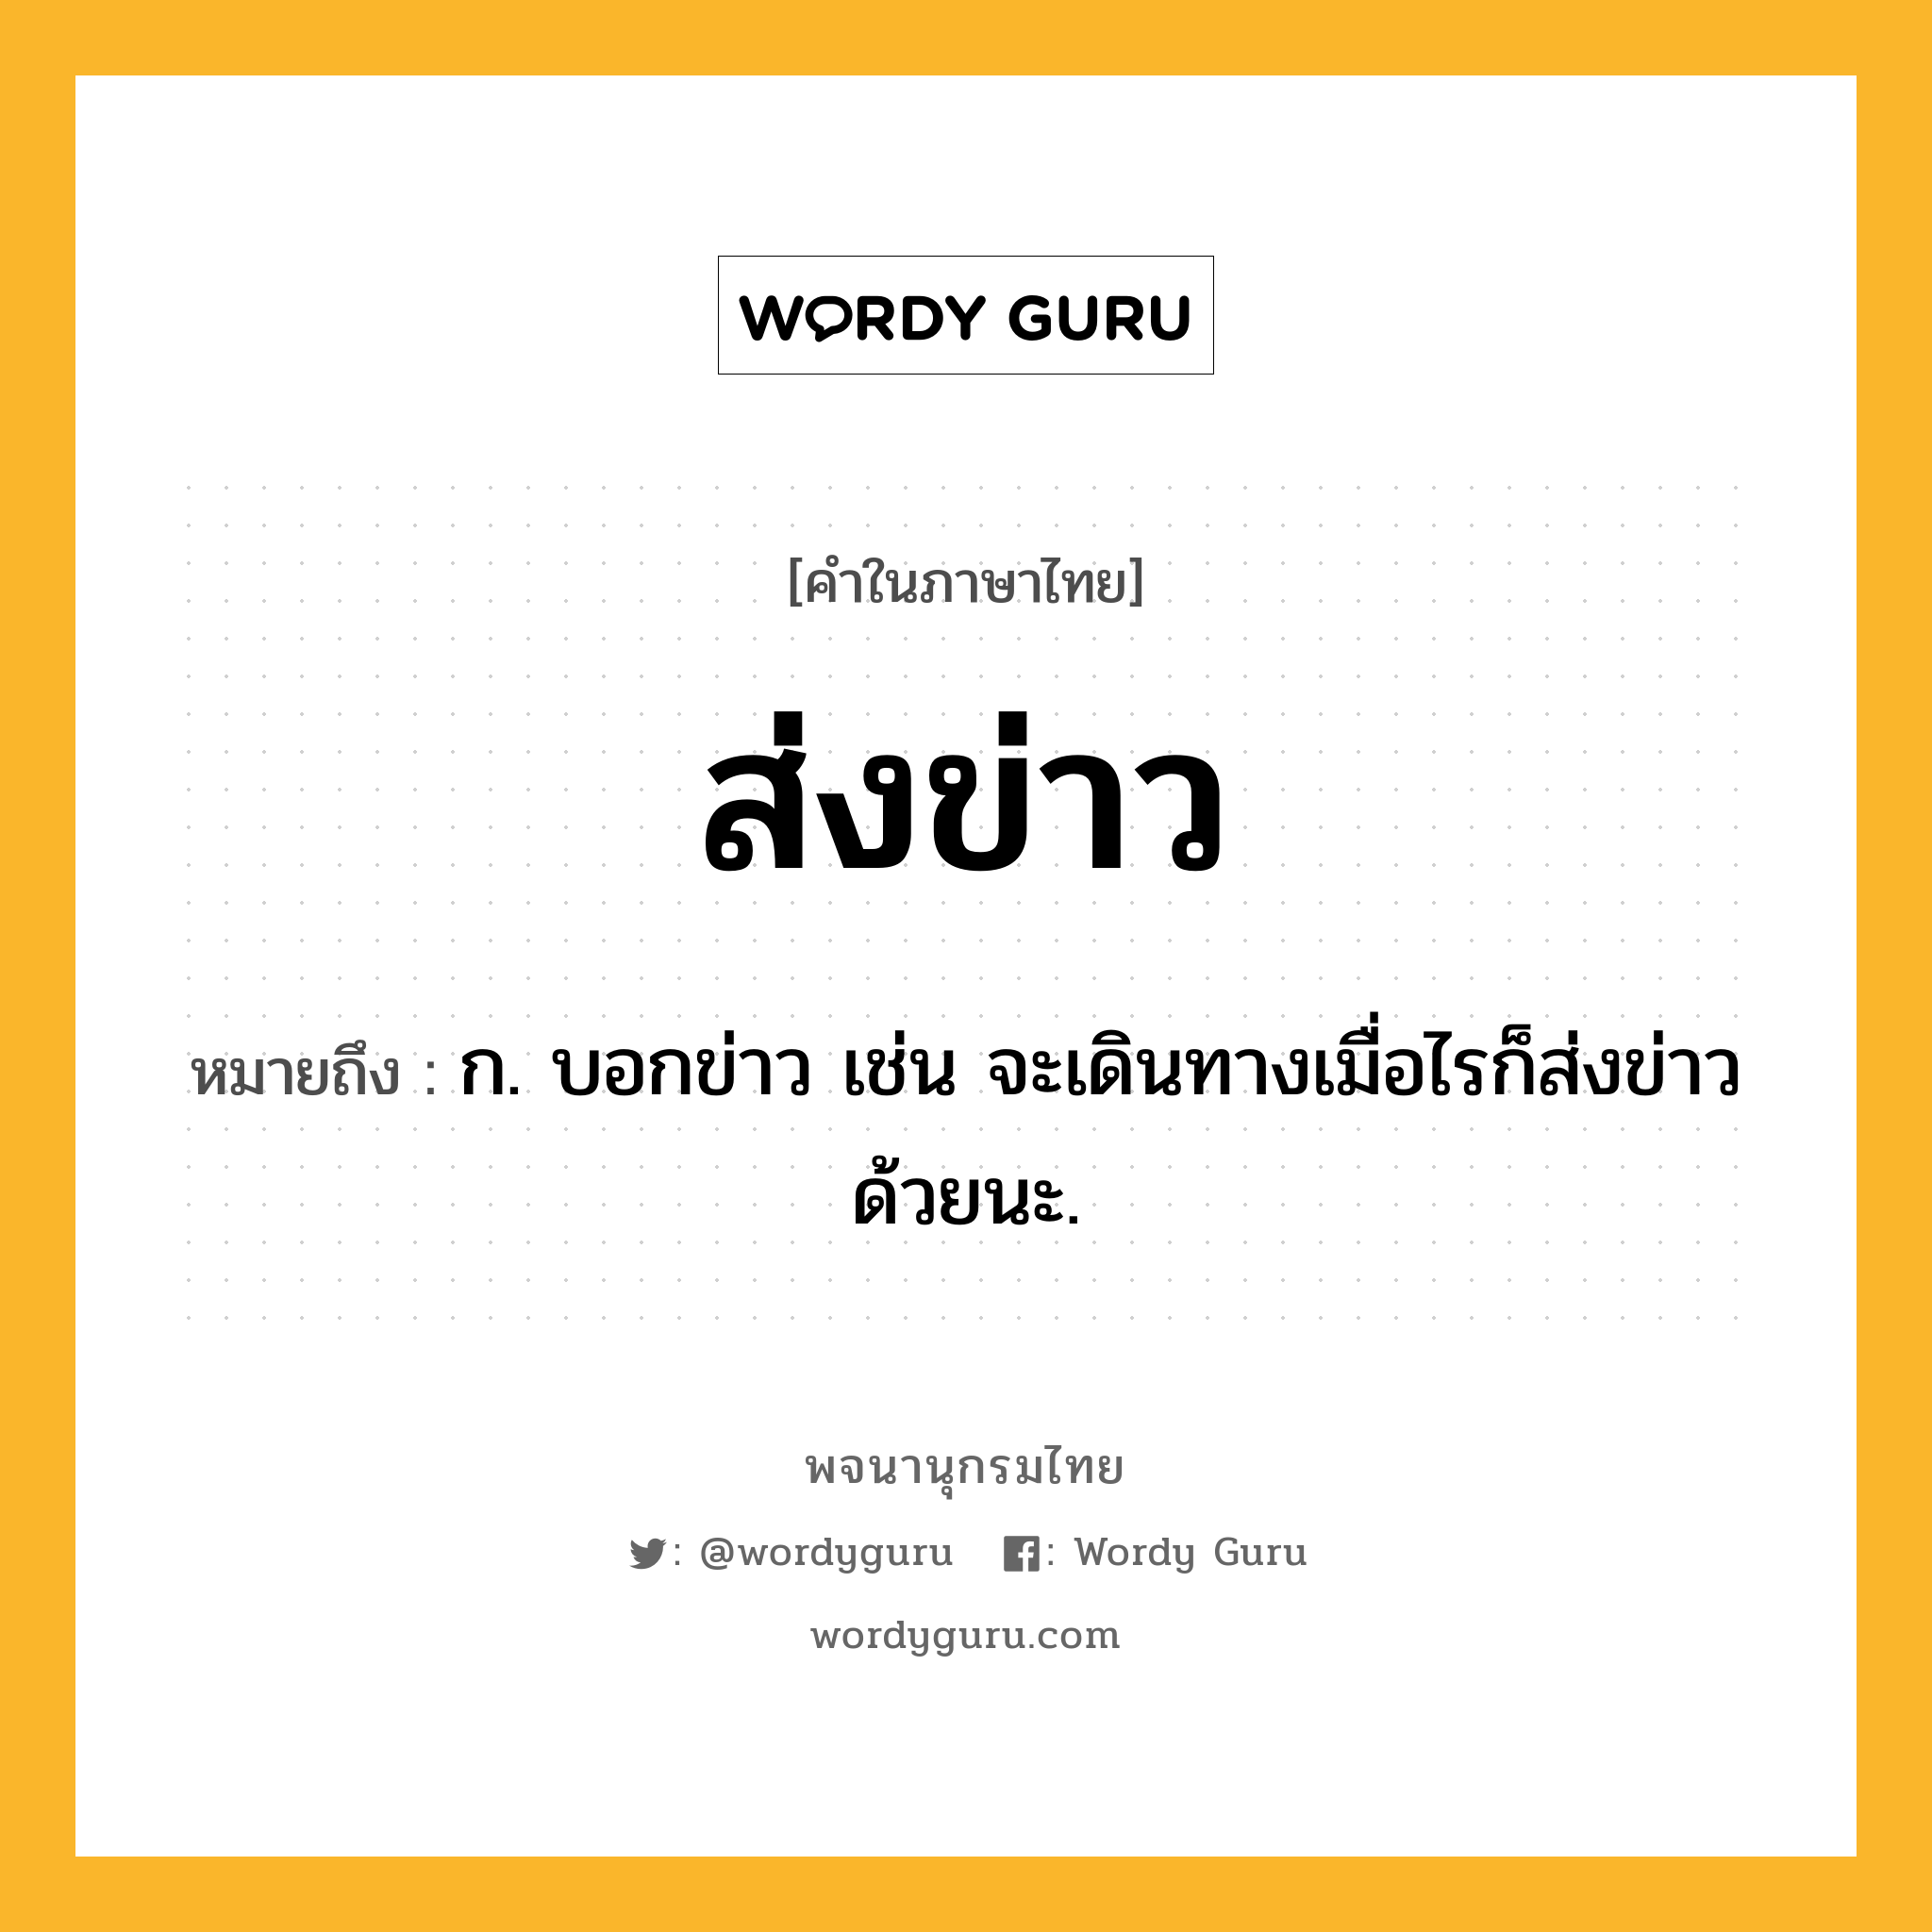 ส่งข่าว หมายถึงอะไร?, คำในภาษาไทย ส่งข่าว หมายถึง ก. บอกข่าว เช่น จะเดินทางเมื่อไรก็ส่งข่าวด้วยนะ.